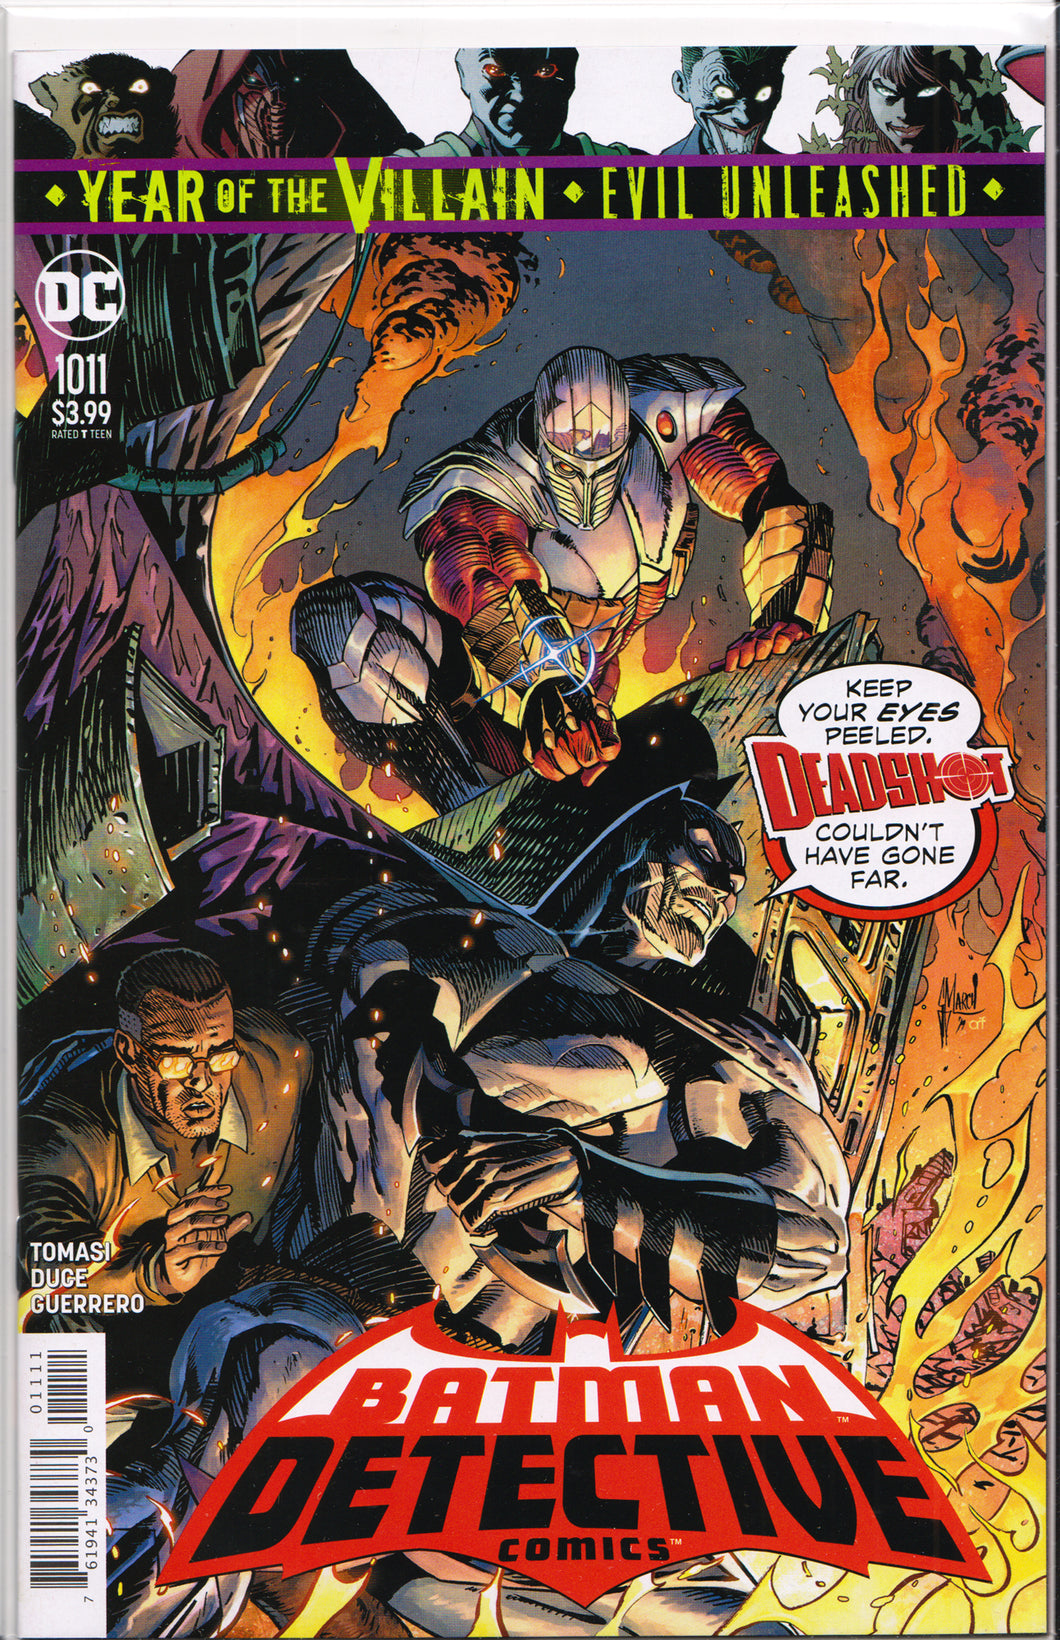 DETECTIVE COMICS #1011 (GUILLEM MARCH VARIANT) COMIC BOOK ~ DC Comics